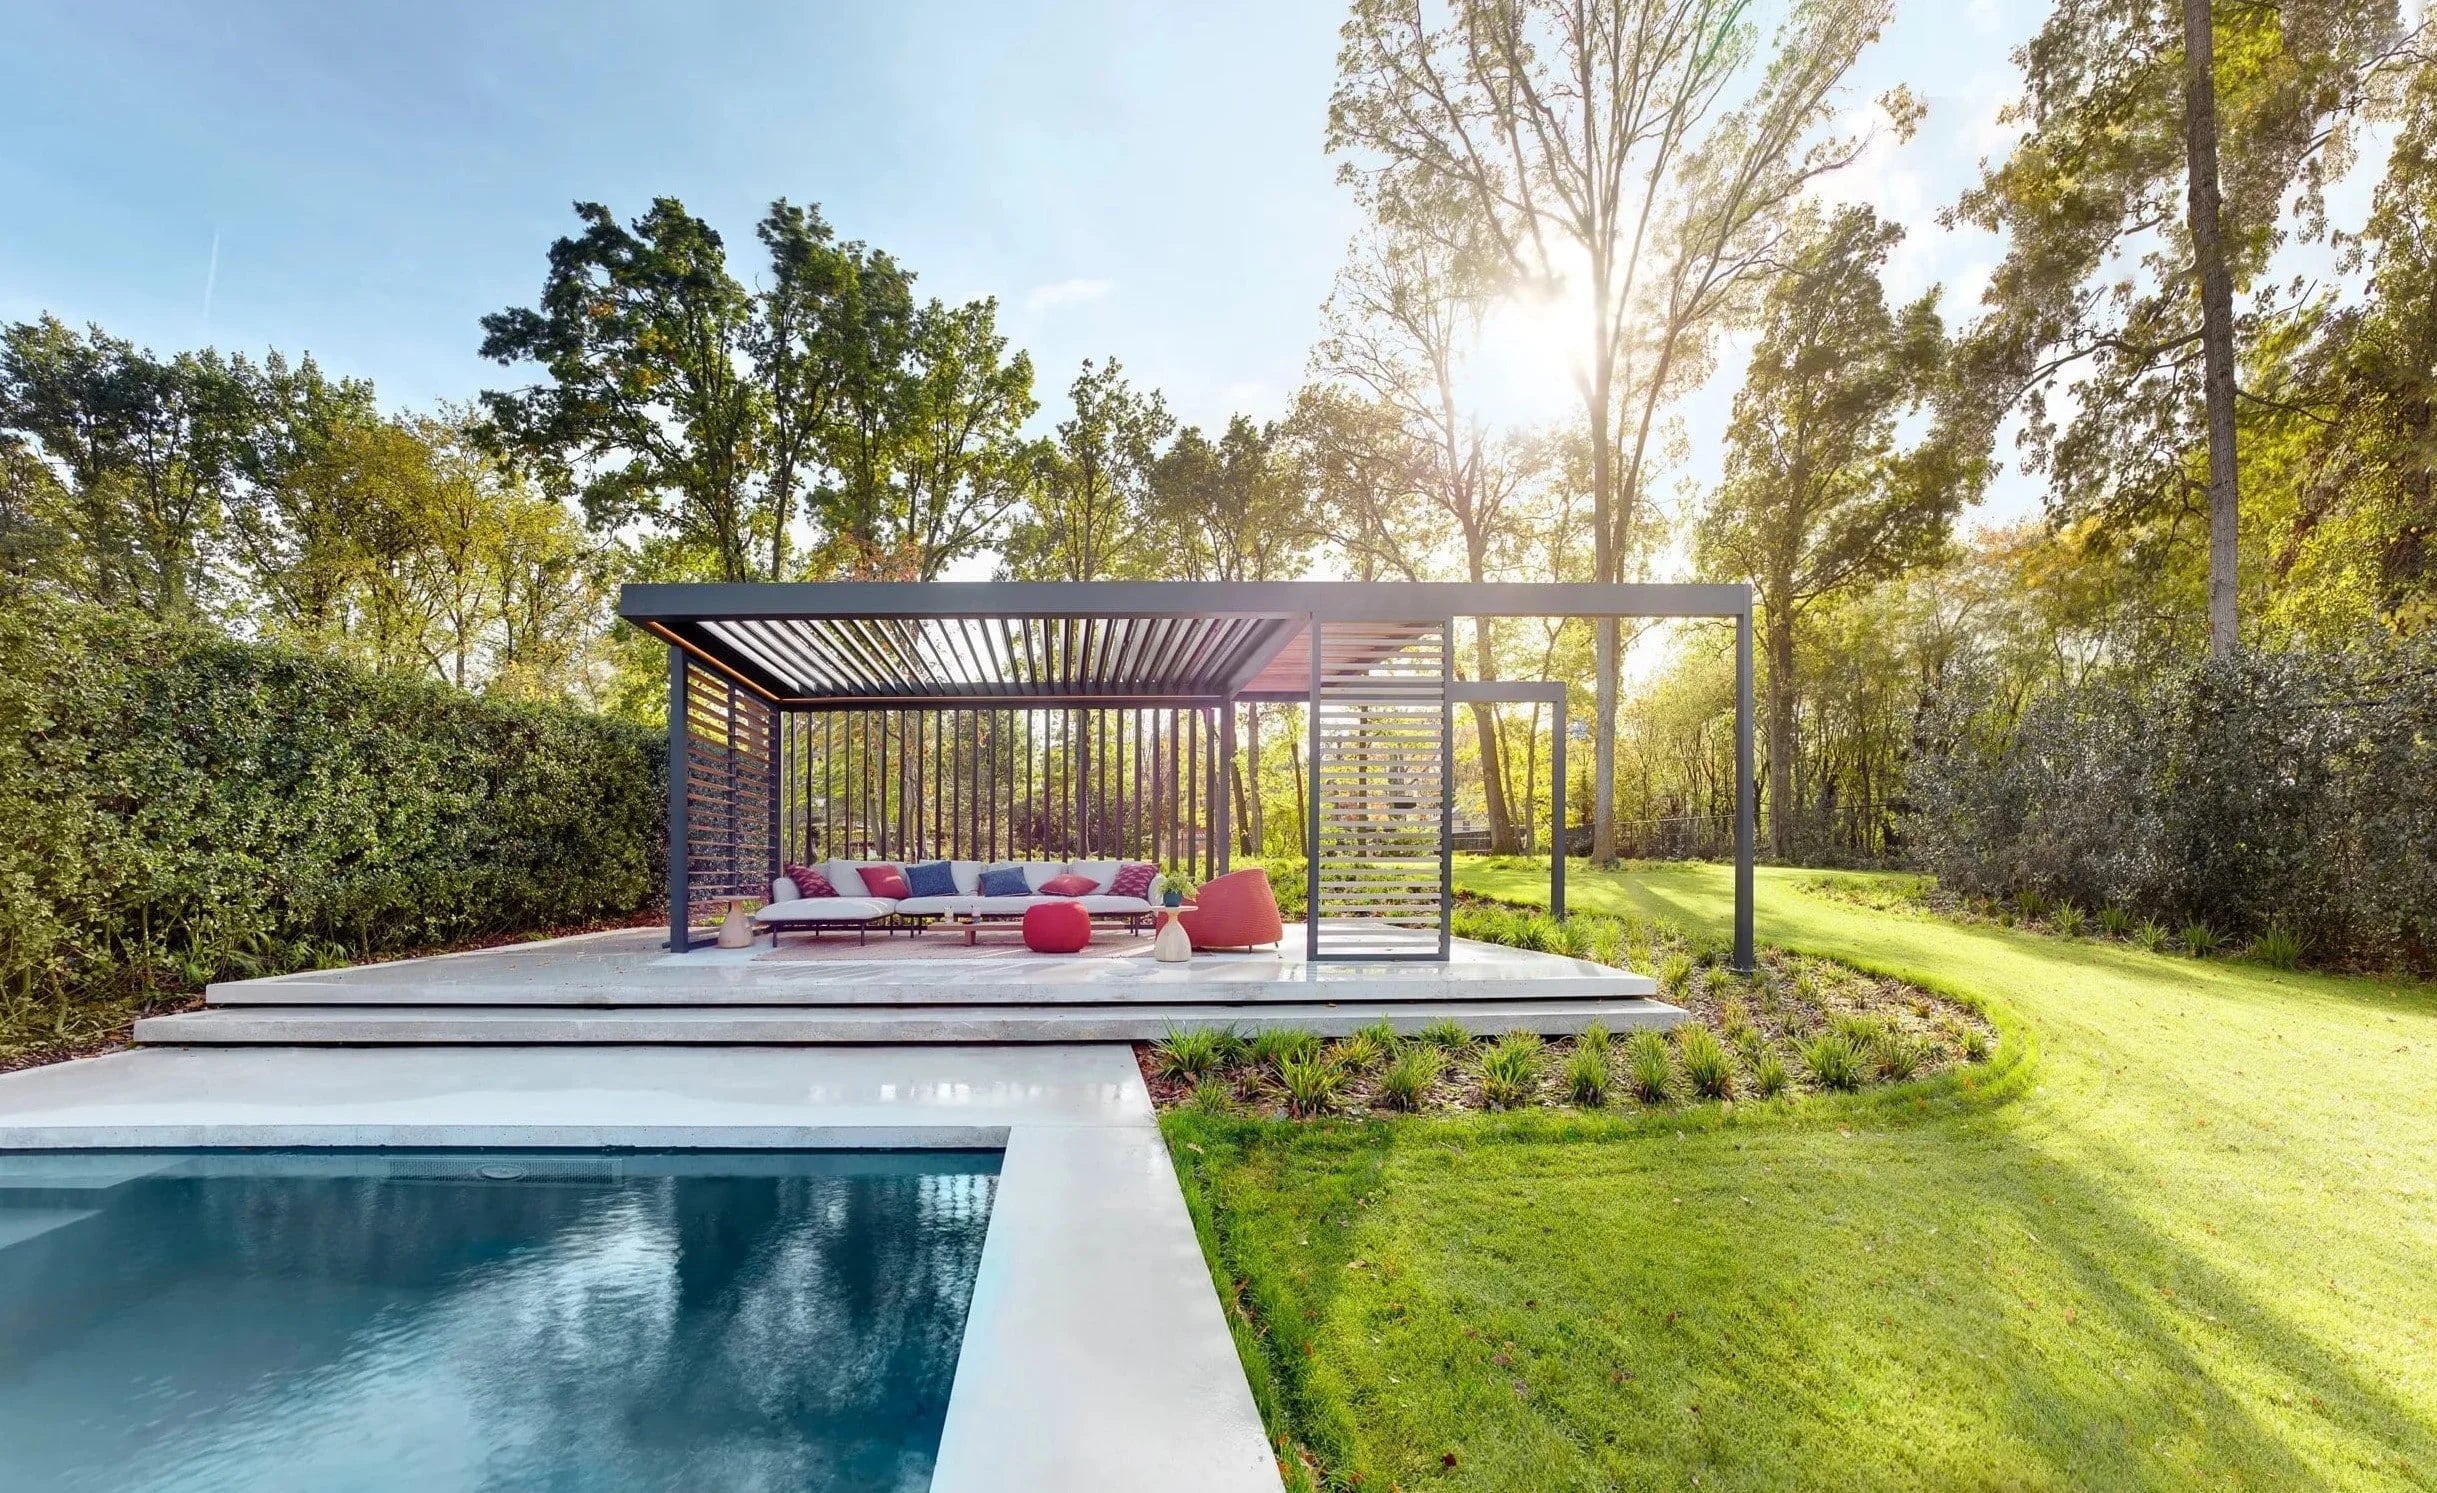 Moderne tuin met zwembad, pergola en loungeset in een natuurlijke omgeving bij zonsondergang.